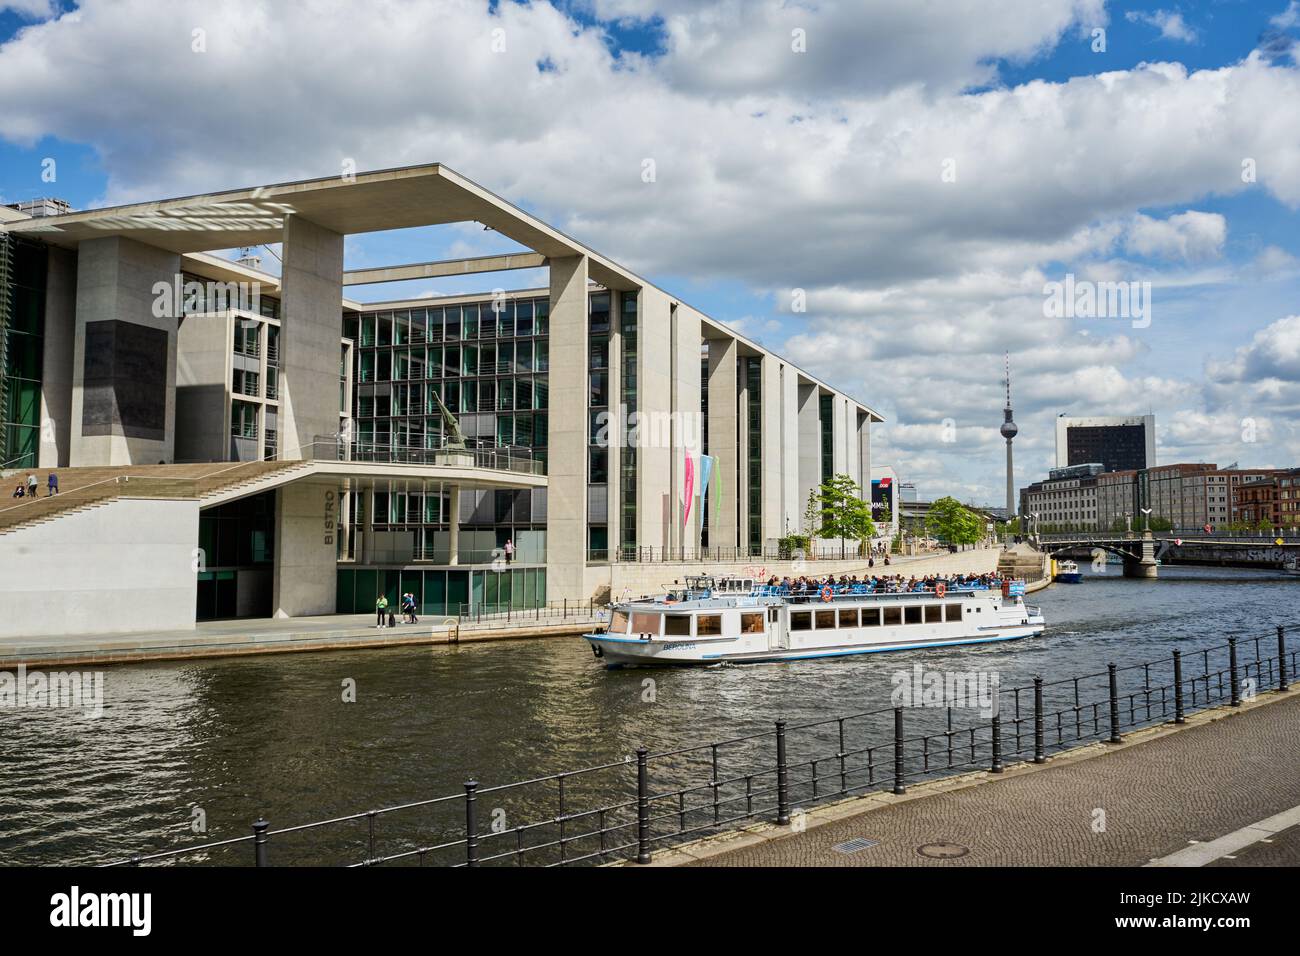 Marie-Elisabeth-Lüders-Haus vom Architekten Stephan Braunfels entworfen, vorne die Spree mit einem Ausflugsboot, Berlin Mitte, Berlin, Deutschland Stock Photo